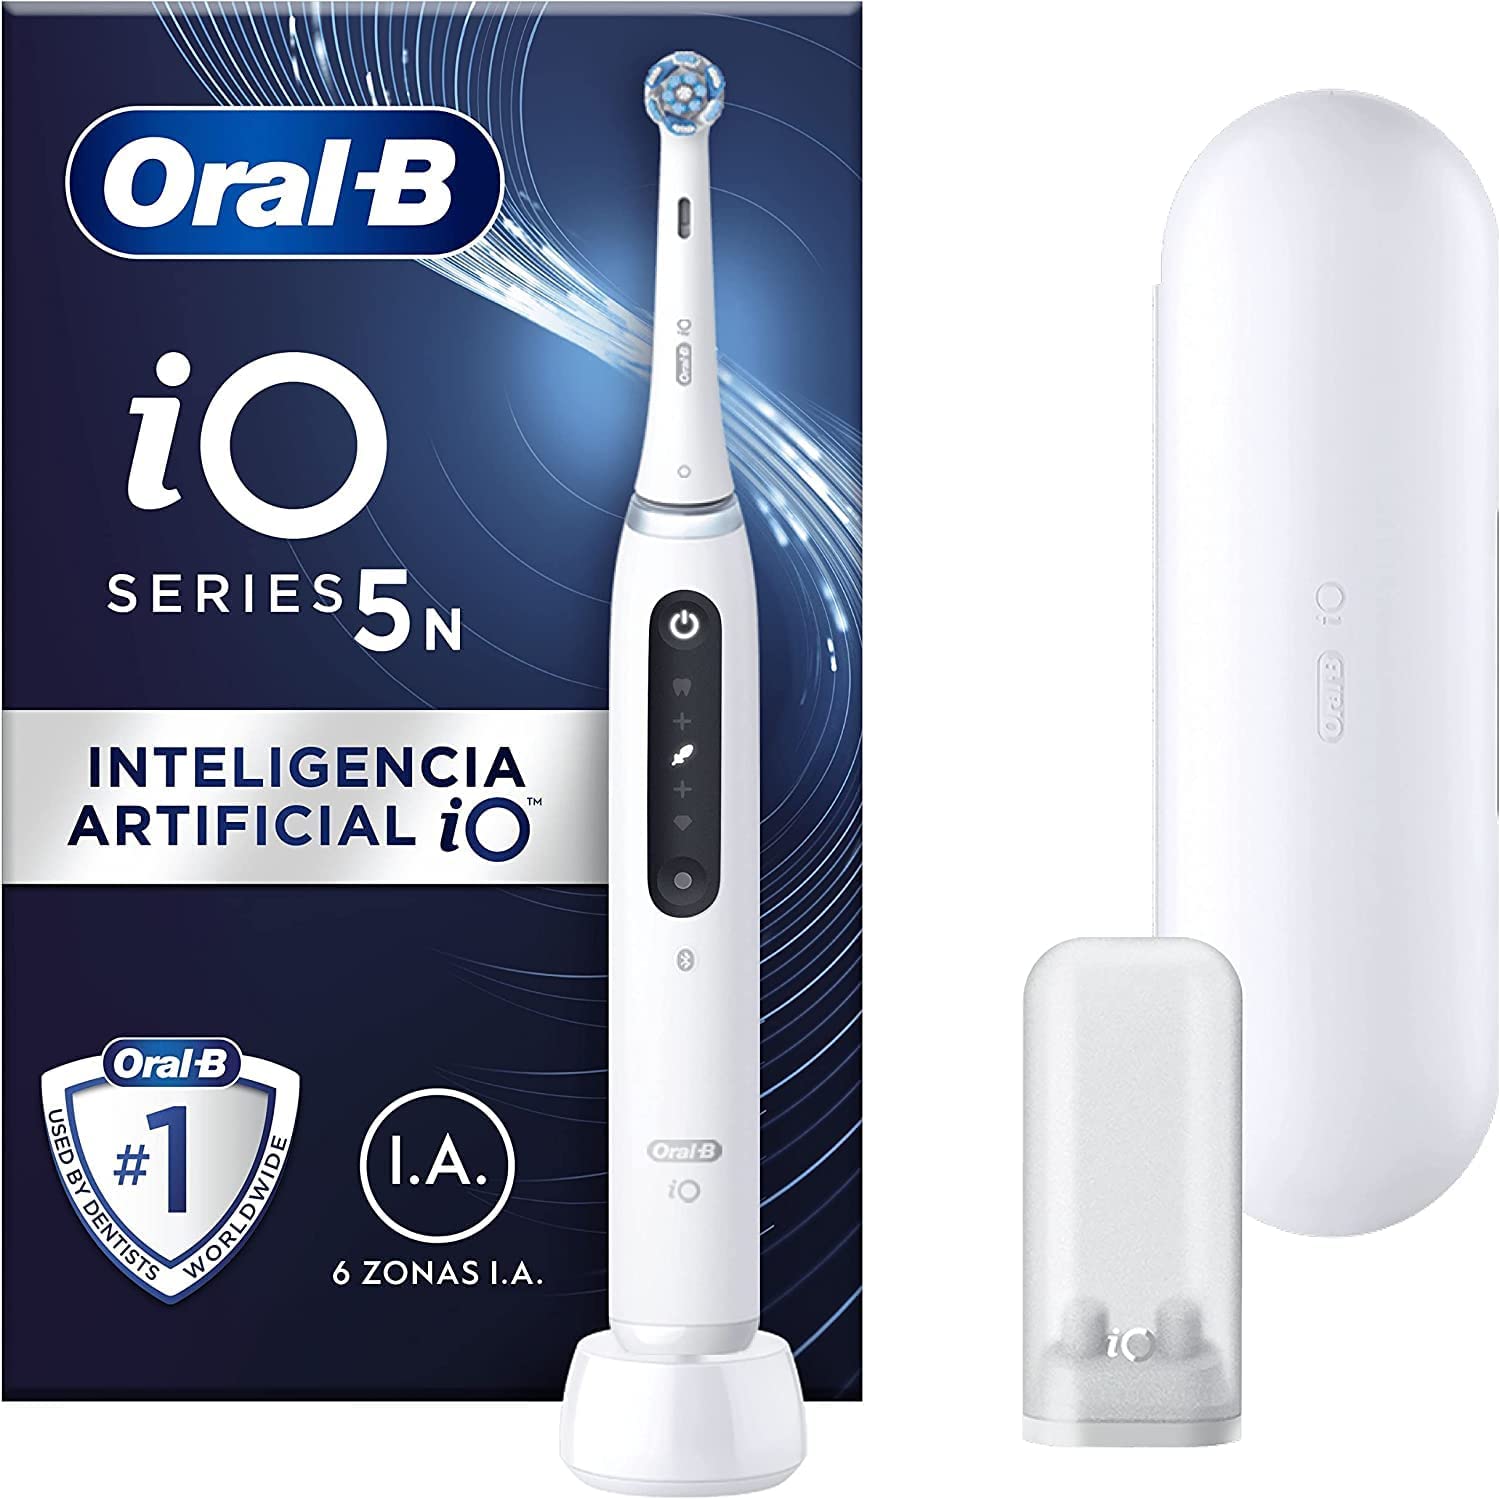 Oral-B IO 5 vs. Oral-B IO 4 vs. Oral-B IO 6